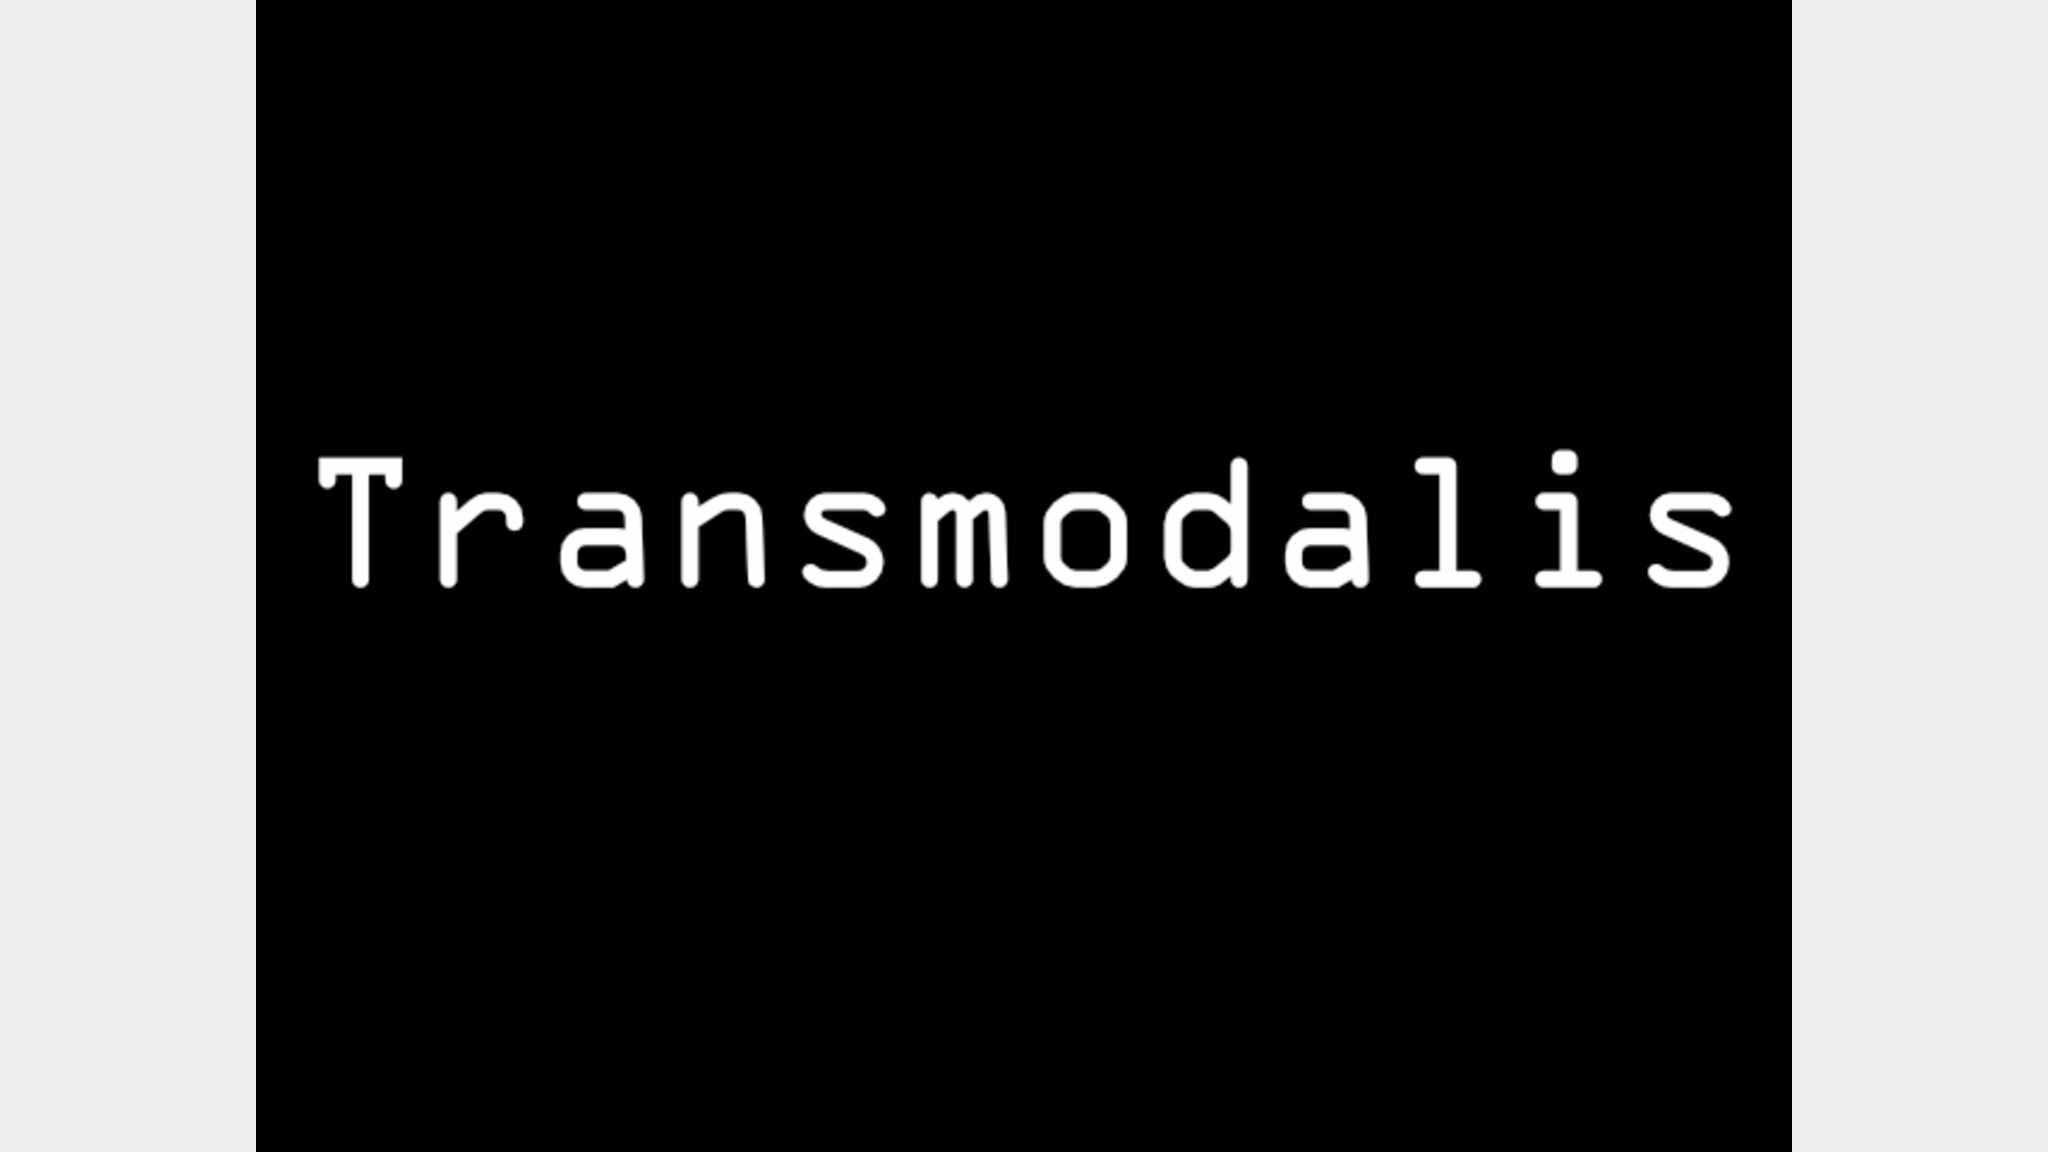 Transmodalis